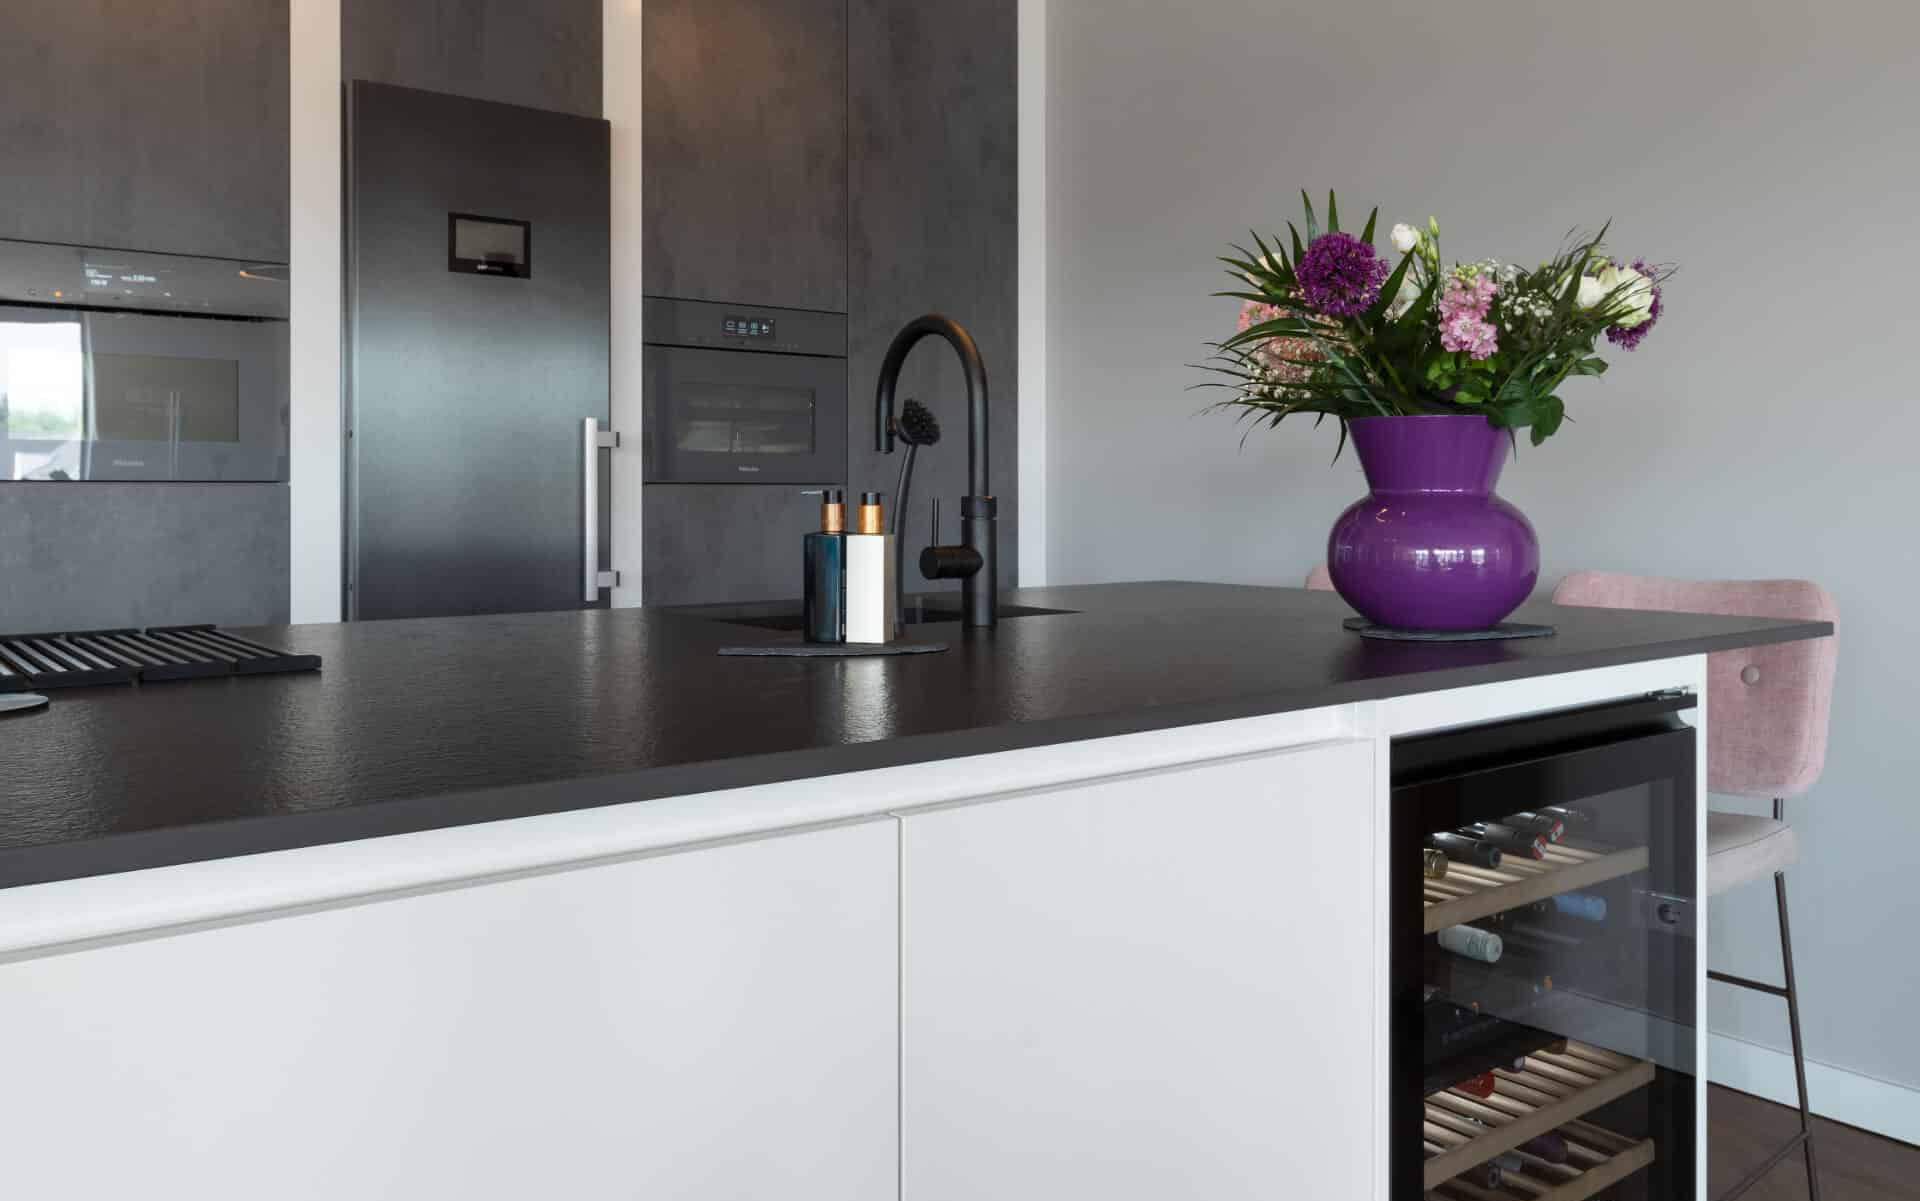 Stoere betonlook keuken met Miele apparatuur Ede vanginkelkeukens uitgelicht